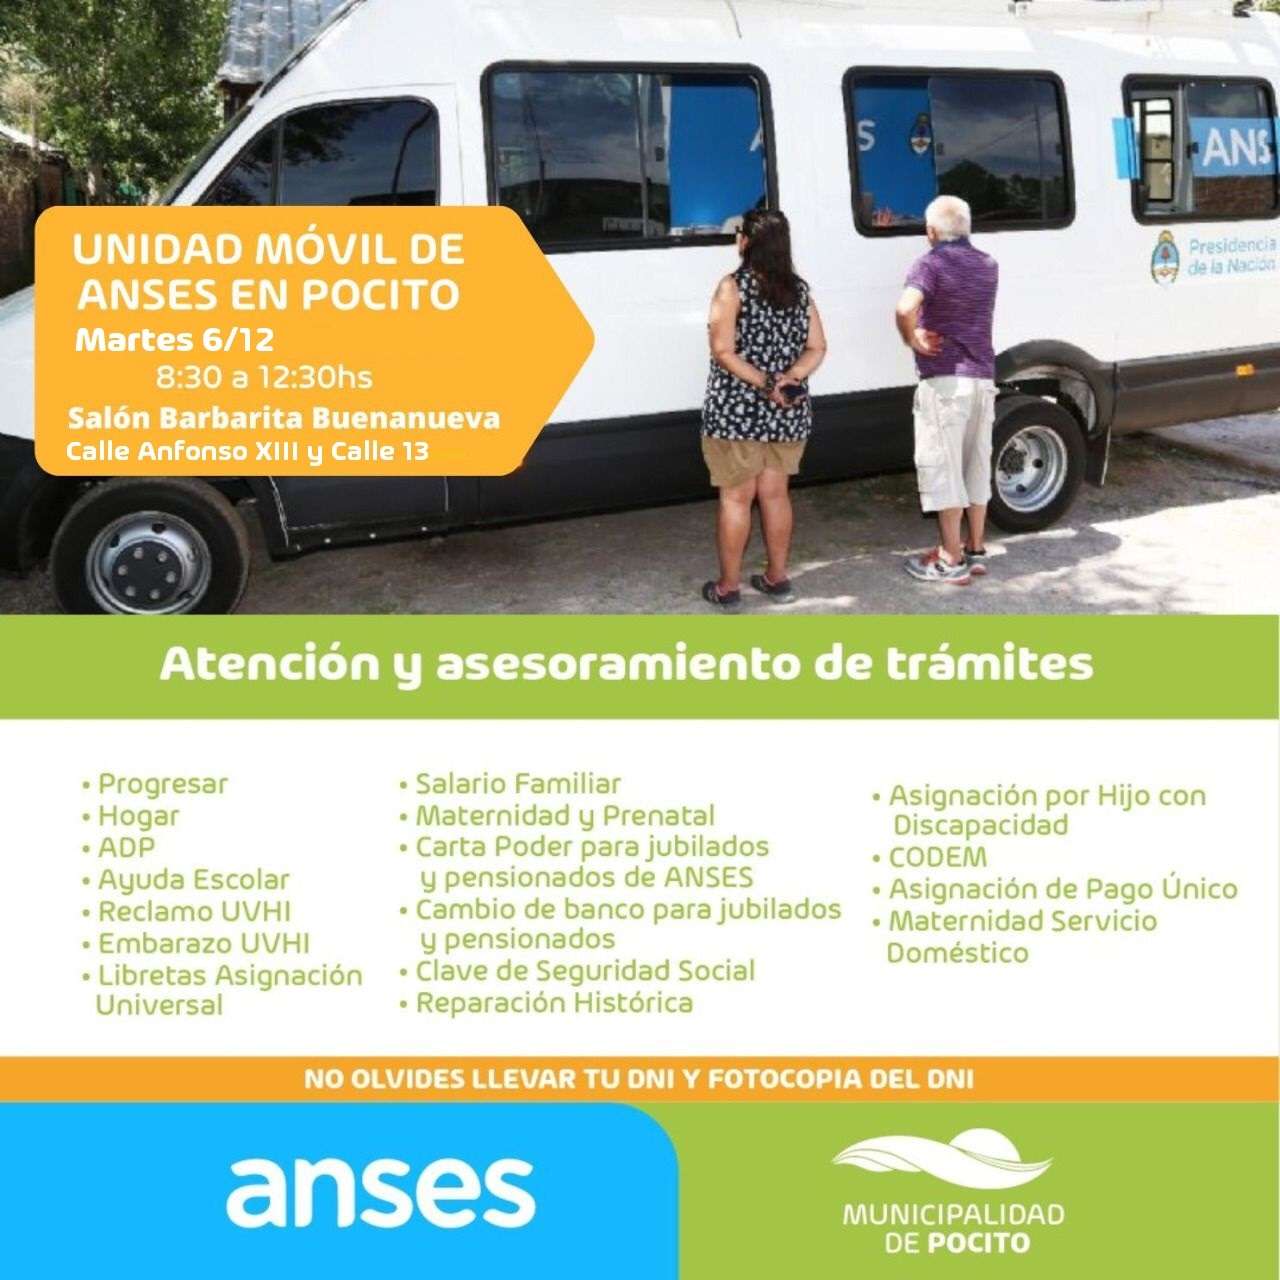 La unidad de atención móvil de Anses estará en Pocito